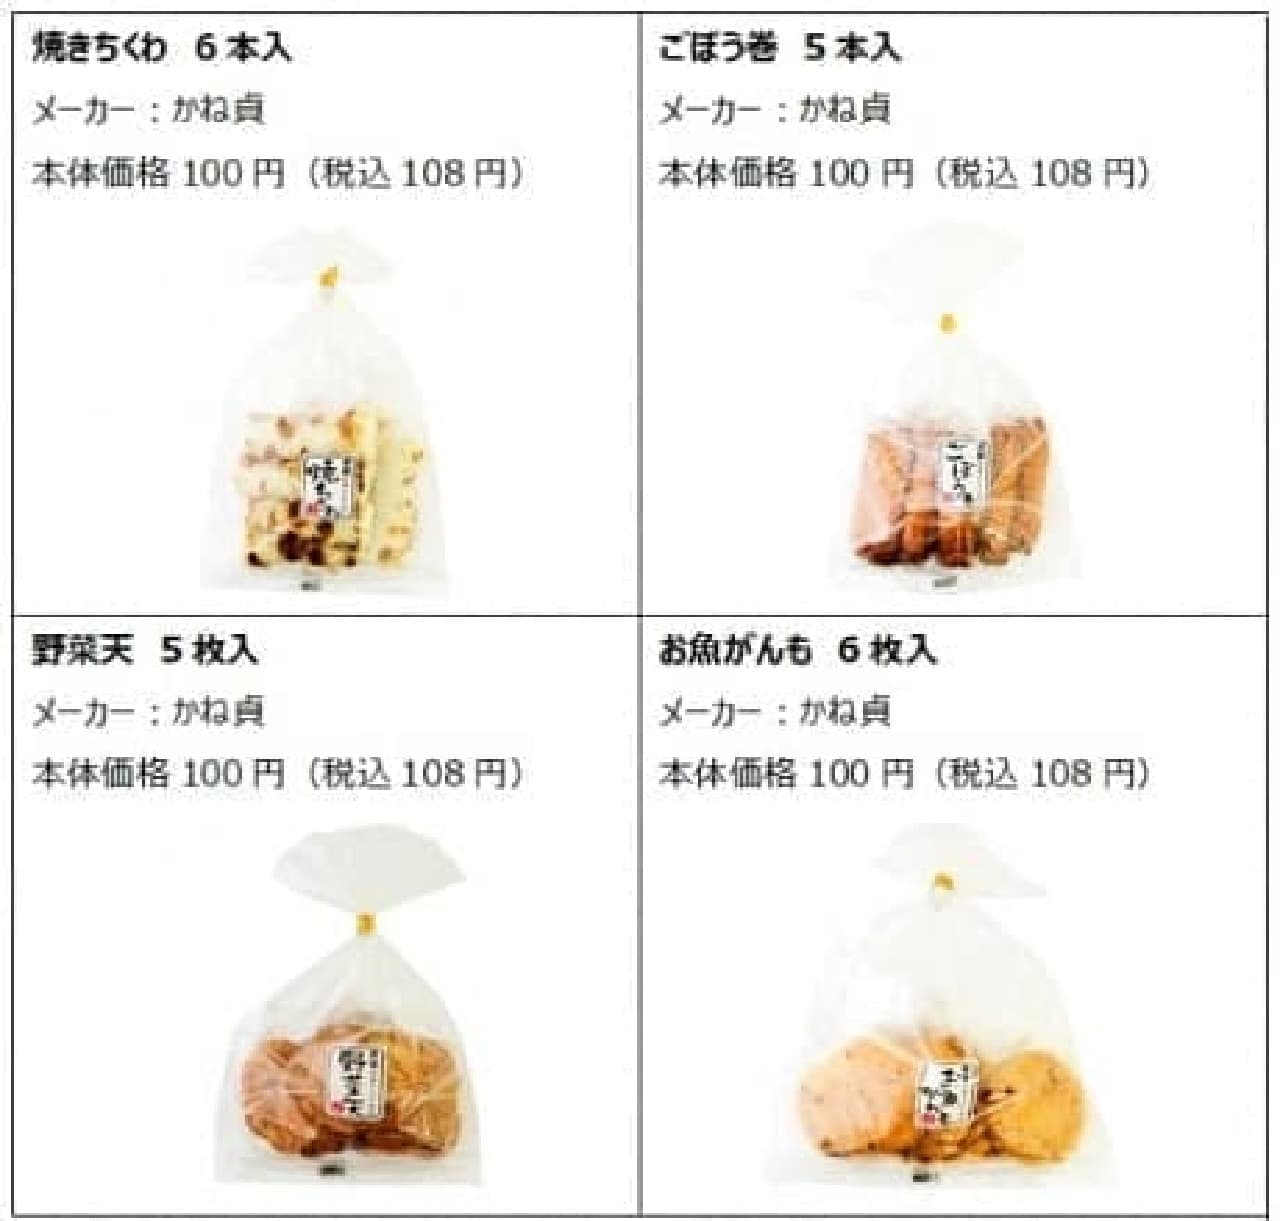 Lawson Store 100 "100 Yen Oden" Series